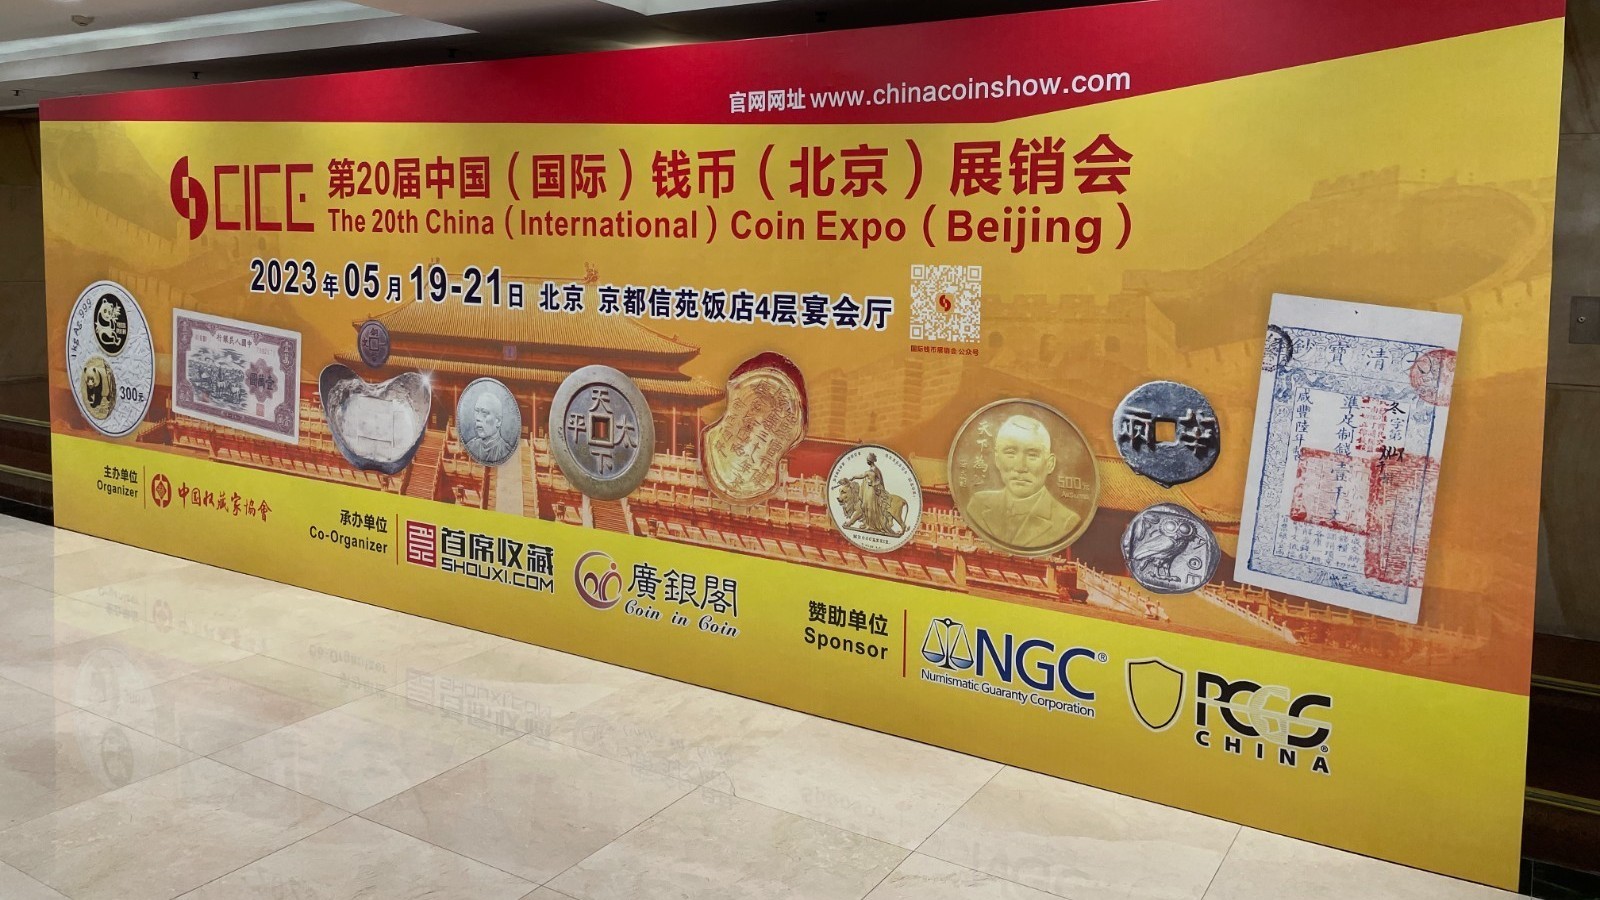 搭建钱币交易平台  第20届CICE中国钱币(北京)展销会正式开幕